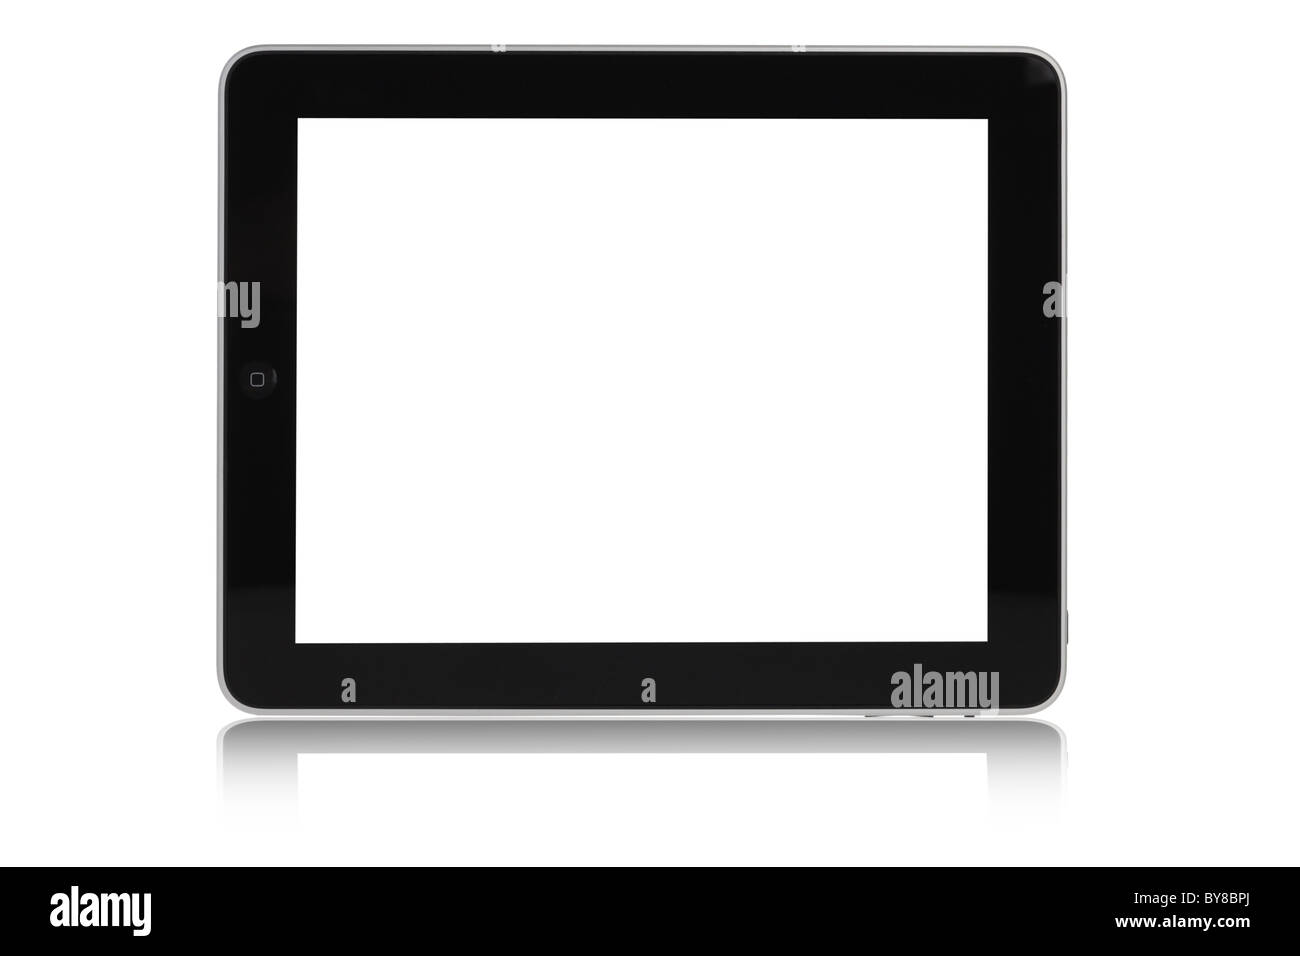 Découpe de l'ipad d'Apple sur fond blanc avec écran vide Banque D'Images